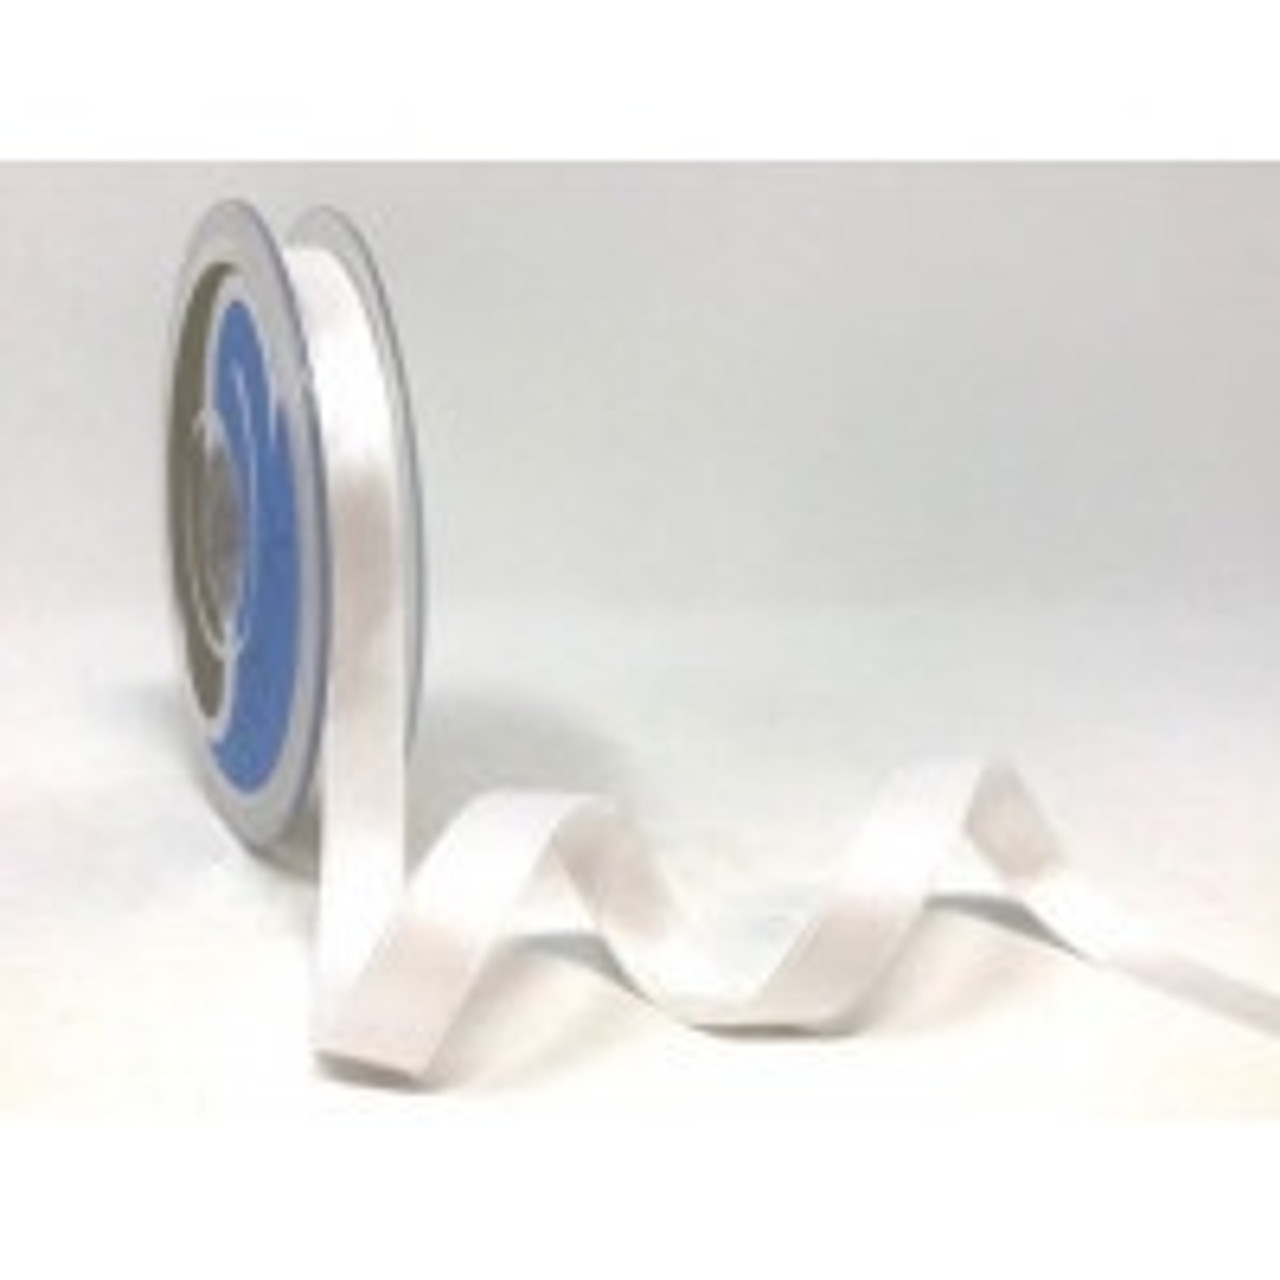 White Satin Ribbon, 11mm wide, Sold Per Metre